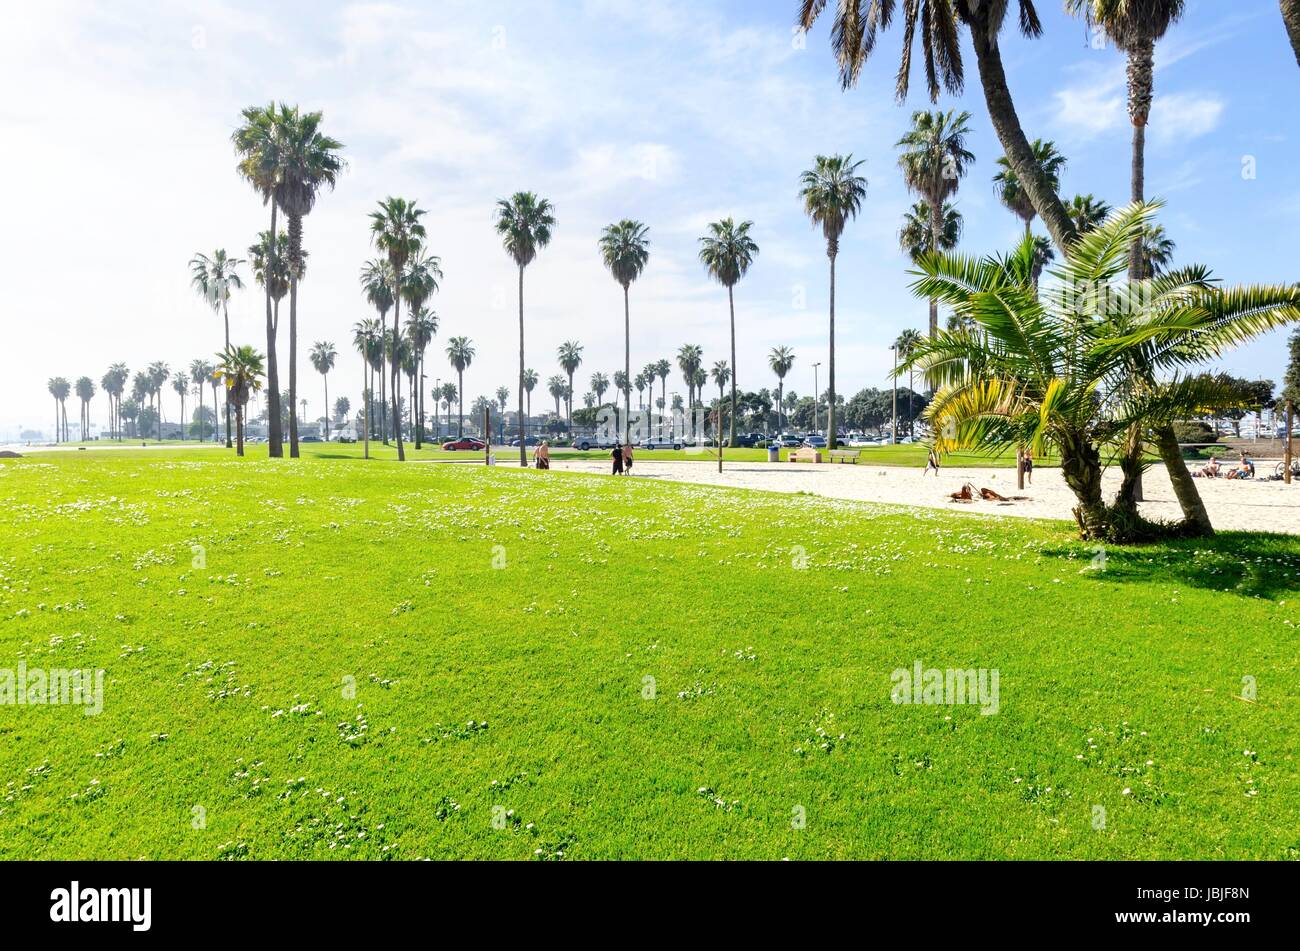 La Bonita cove park dans le sud de Mission Bay sur la plage du Pacifique à San Diego, Californie aux États-Unis d'Amérique. Une vue de la plage de sable doré, de palmiers, de volley-ball et un ciel clair. Banque D'Images